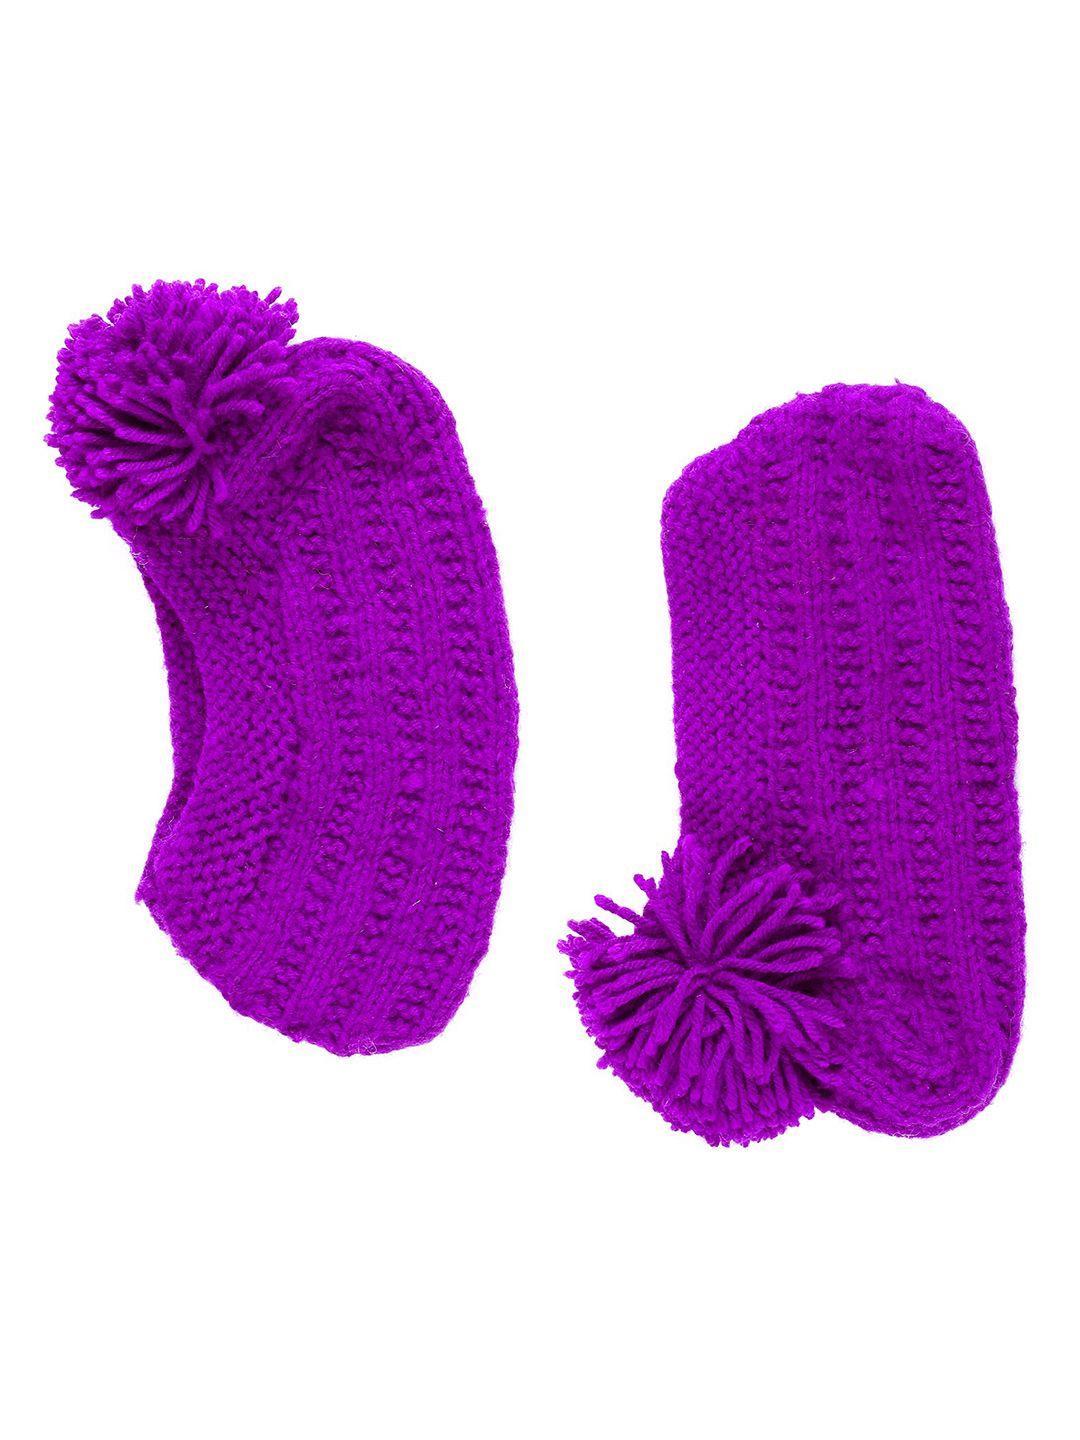 Bharatasya Girls Purple Pom-Pom Knited Footie Socks